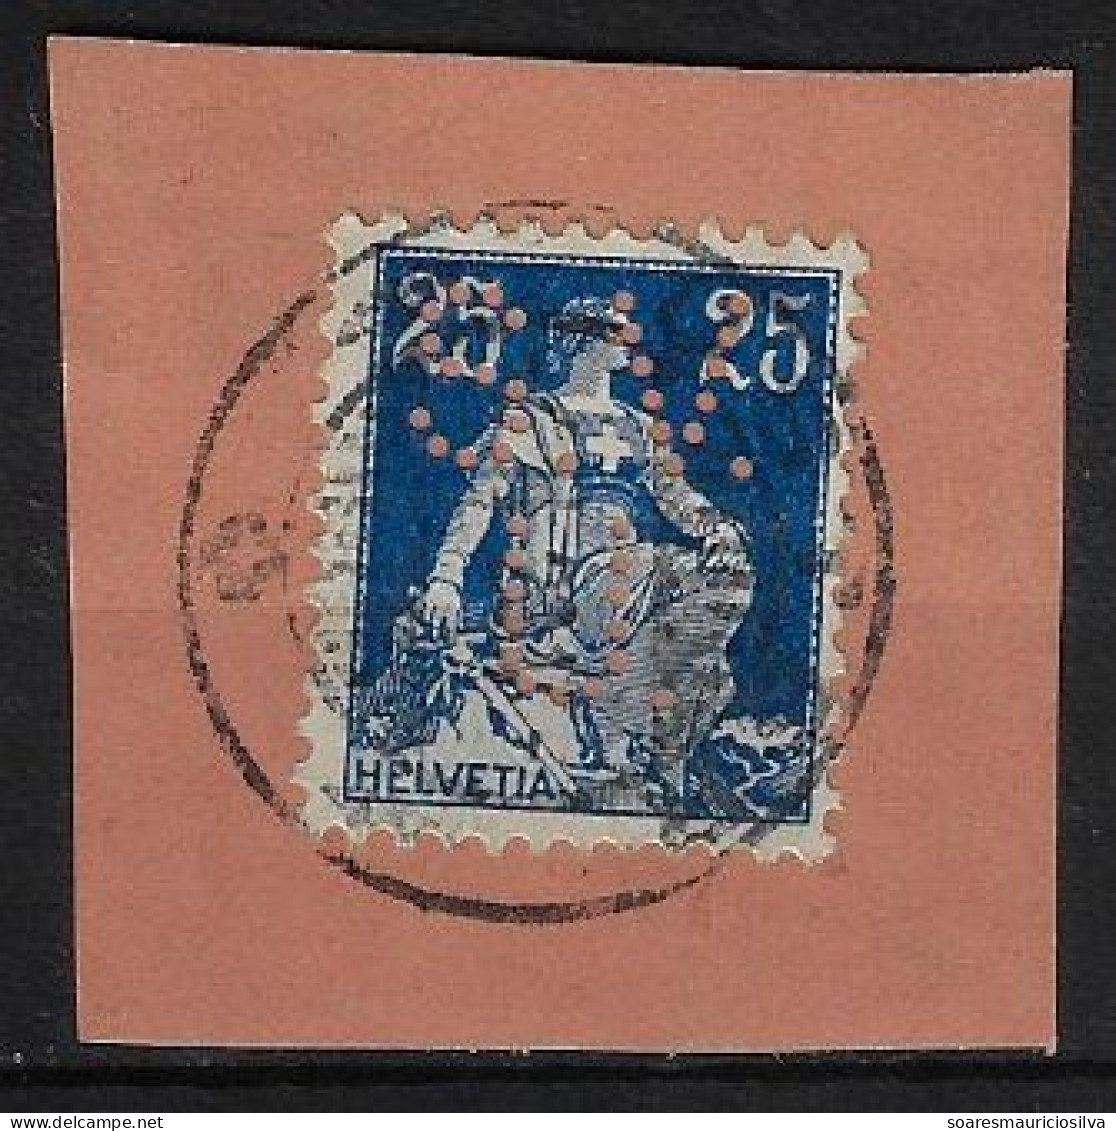 Switzerland 1904/1931 Cover Fragment Stamp With Perfin S.V./U. By Schweizerische Volksbank From Ulster Lochung Perfore - Gezähnt (perforiert)